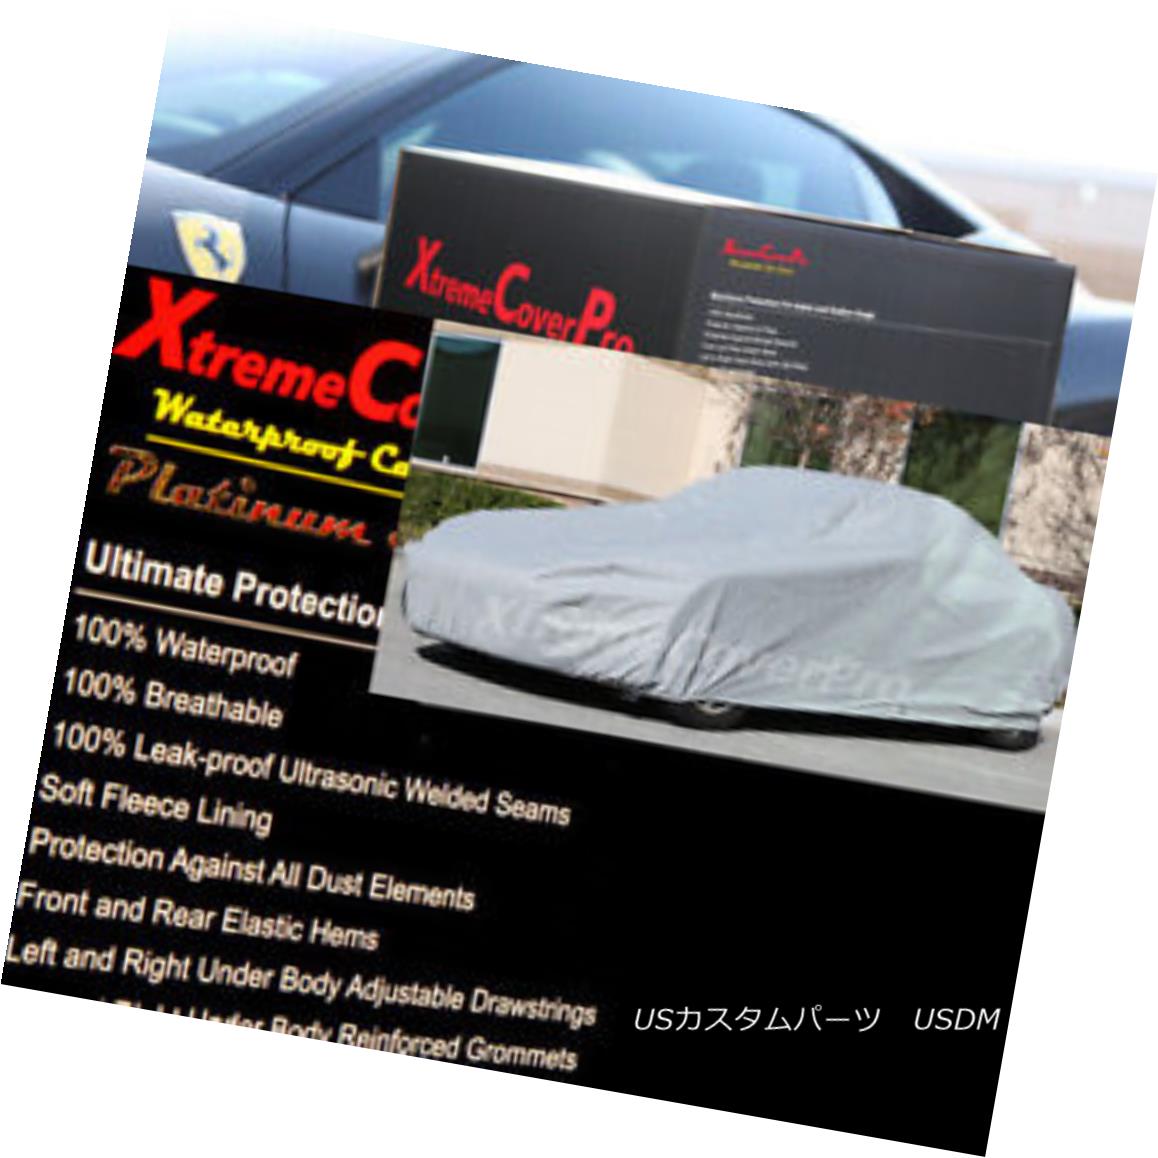 カーカバー 2015 JEEP WRANGLER Waterproof Car Cover - Gray 2015 JEEP WRANGLER防水カーカバー - グレー 1